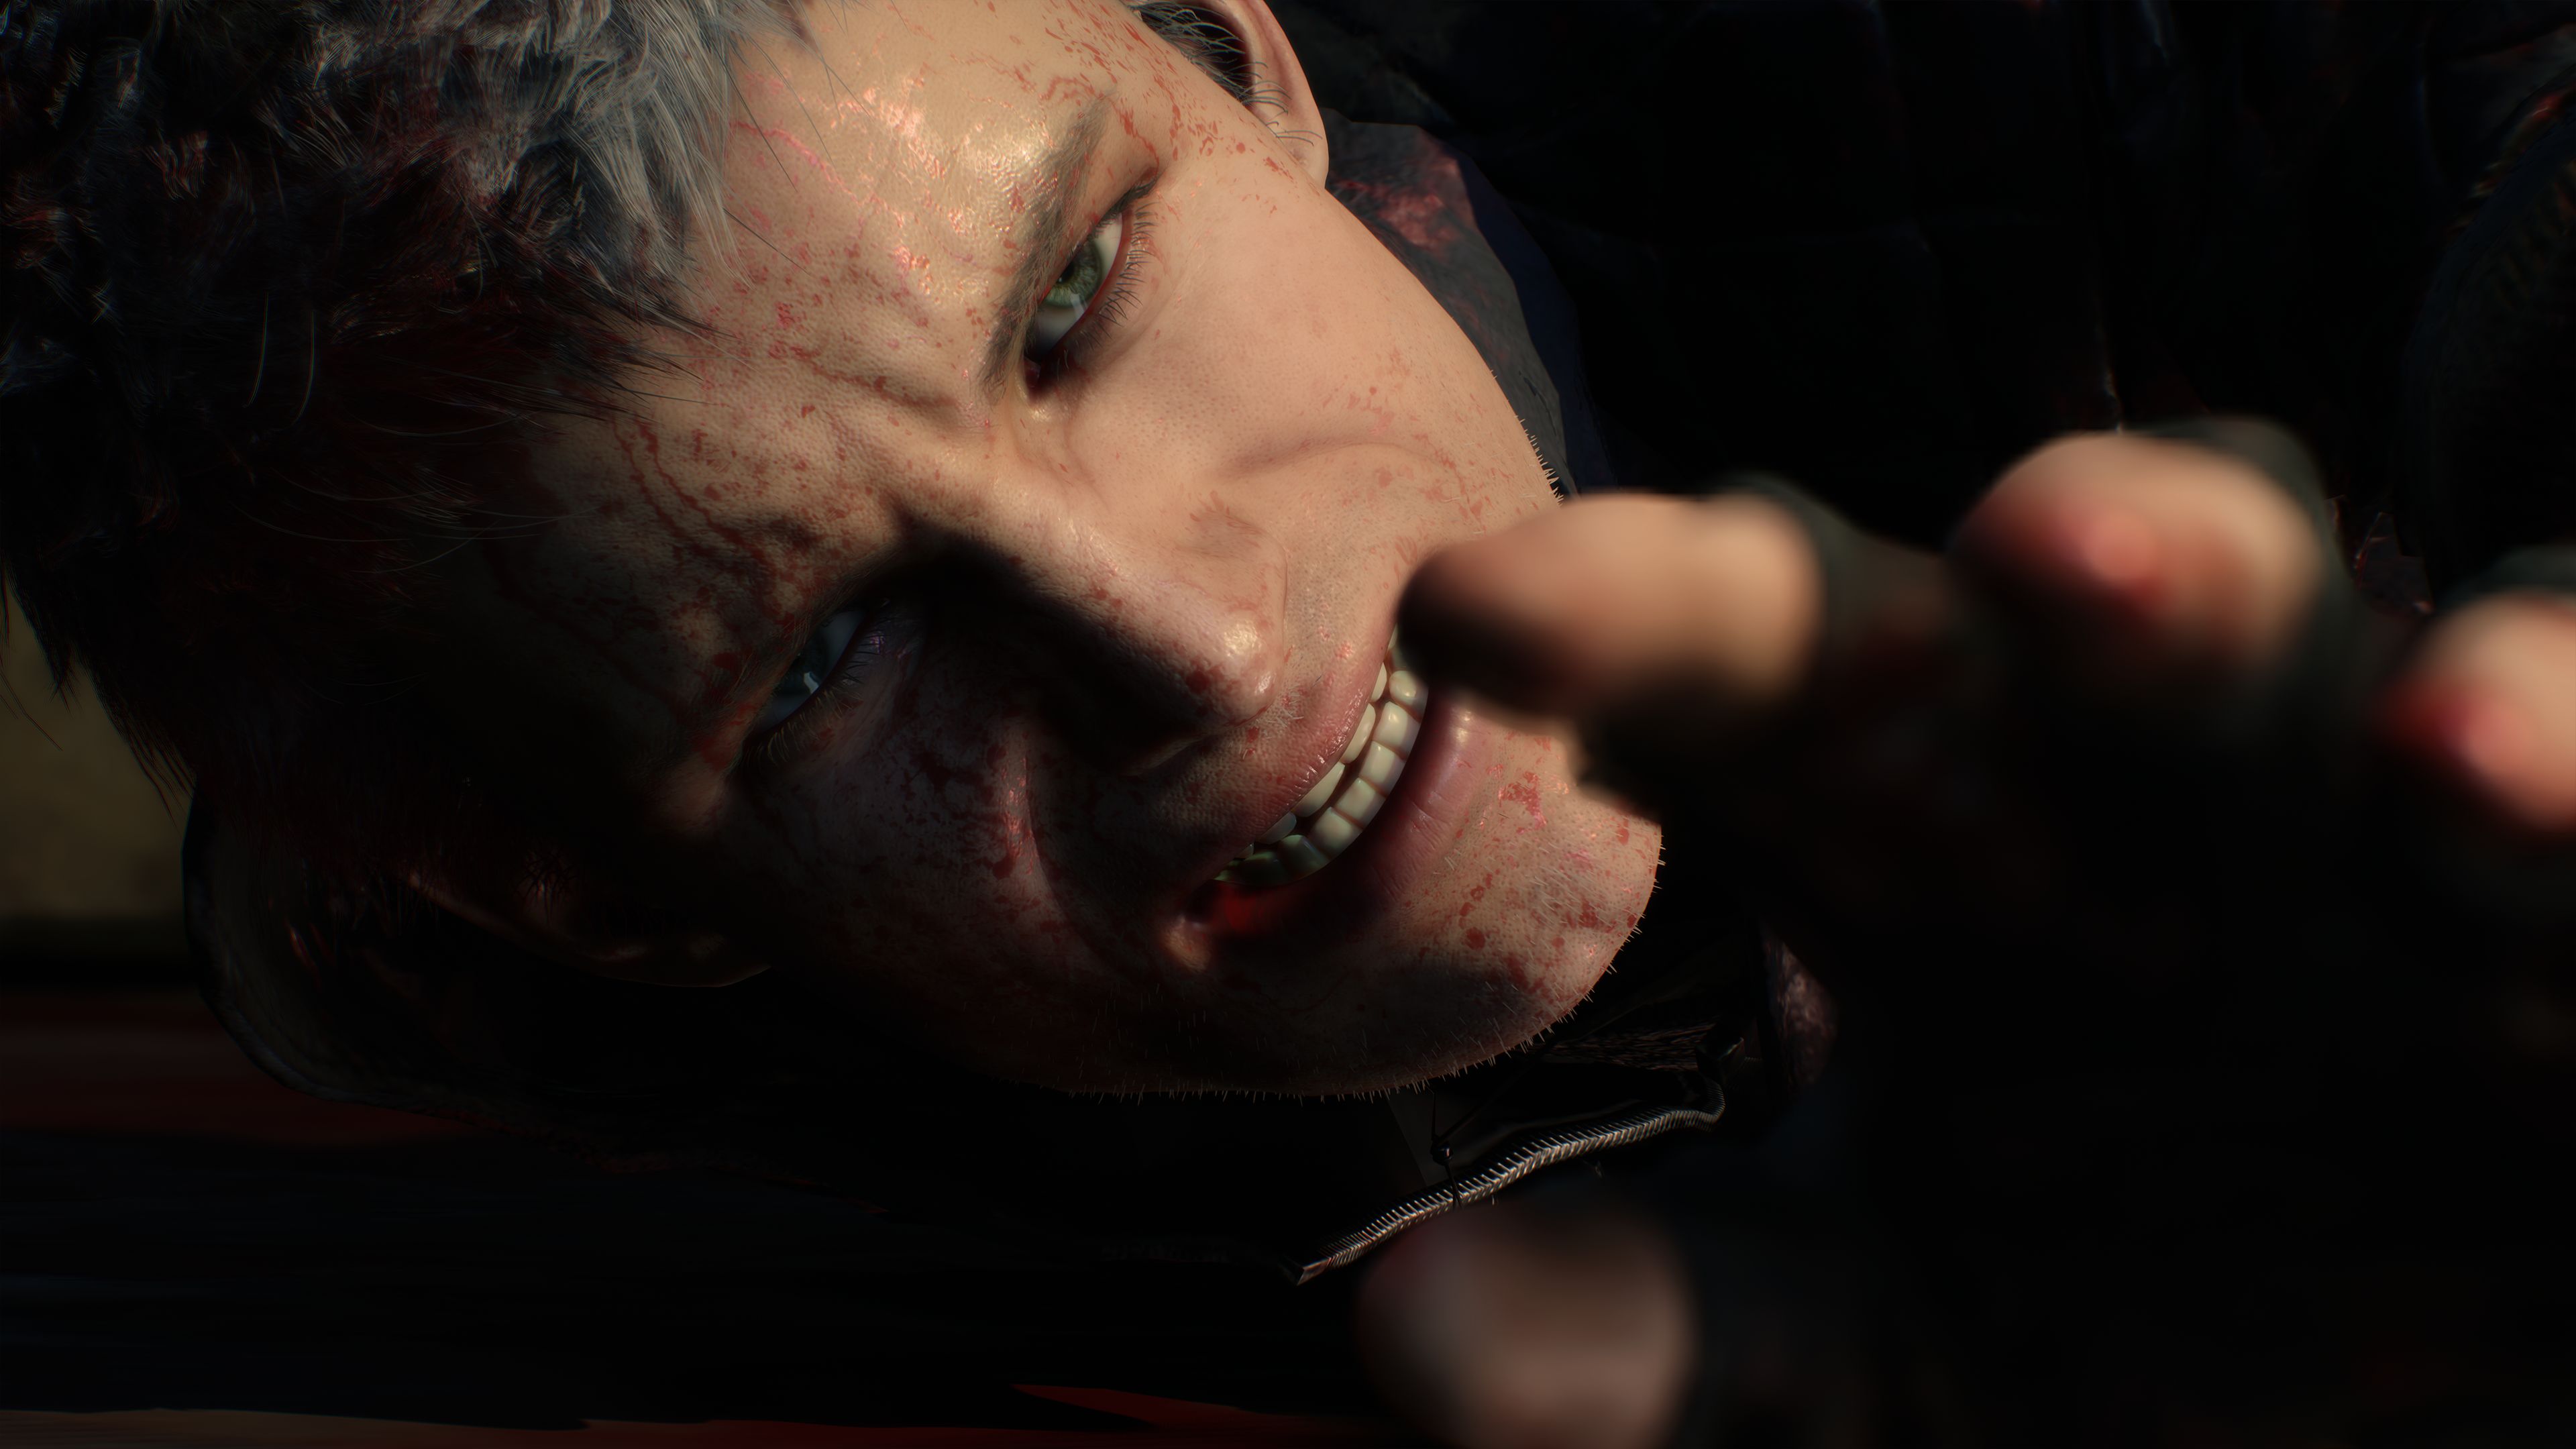 Продюсер Devil May Cry 5 поведал о новом образе Неро, отношении Capcom к DmC и движке игры